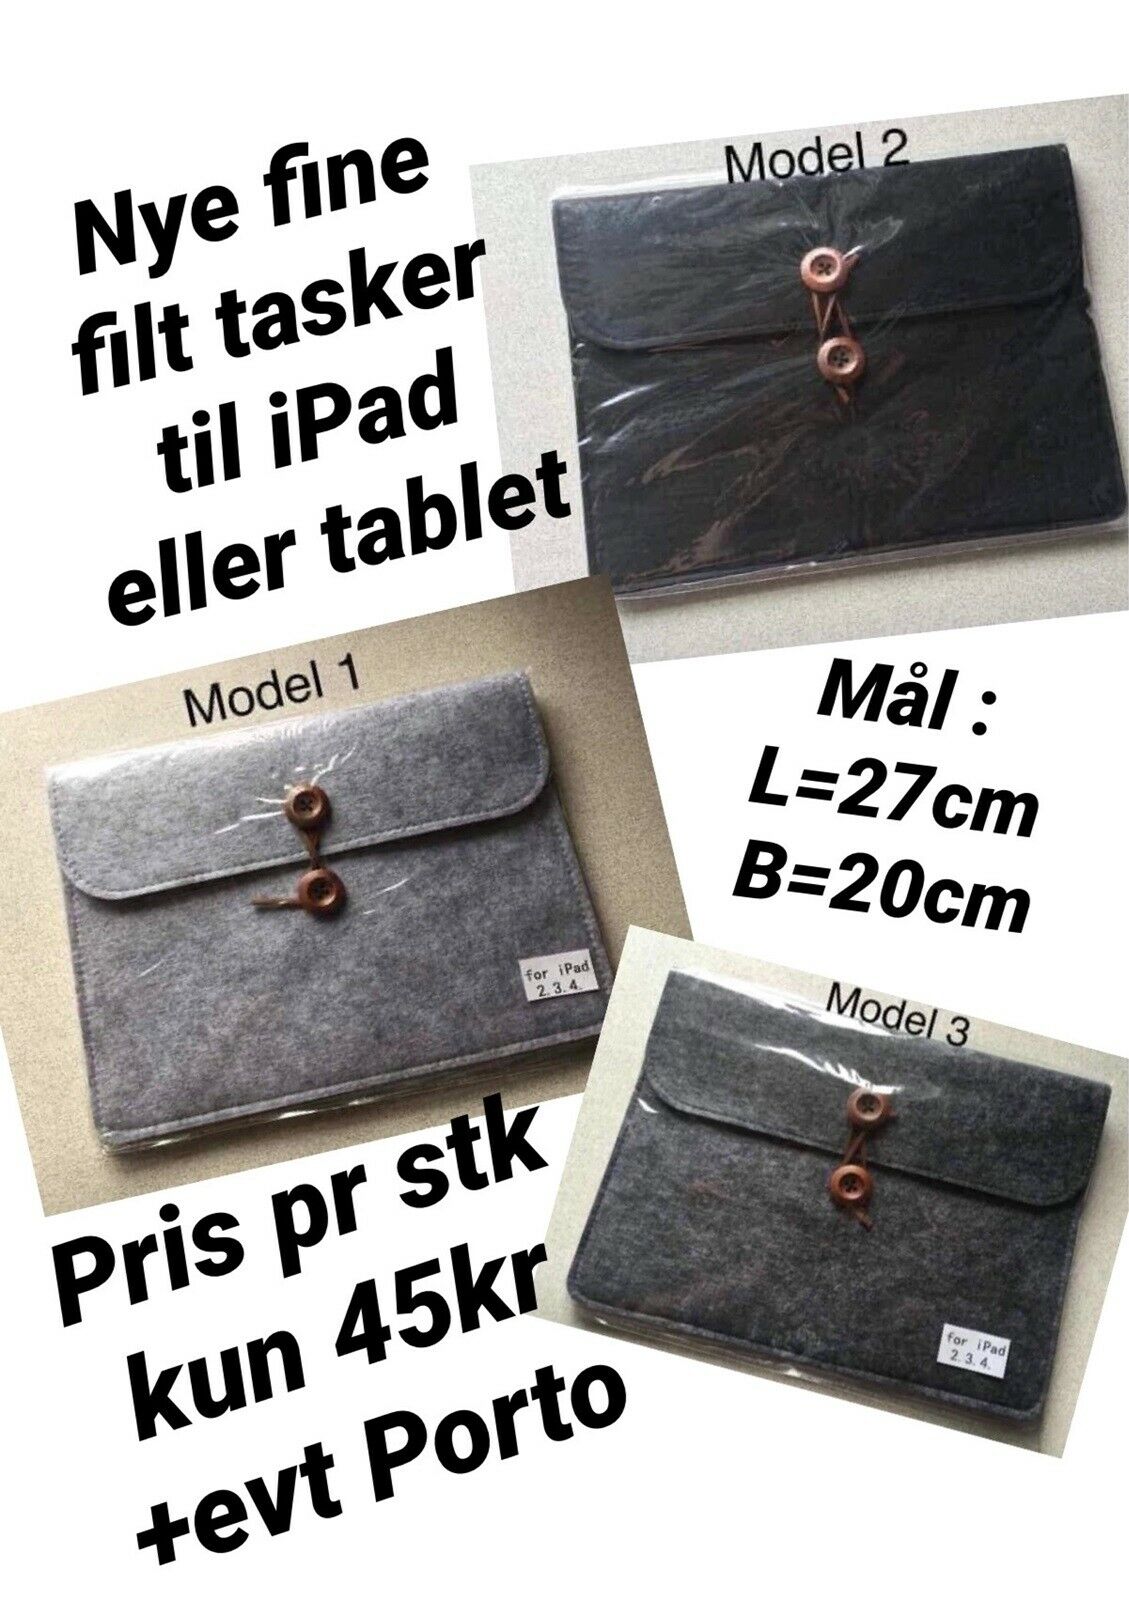 Filttaske iPad 10” – dba.dk – Køb Salg af Nyt og Brugt